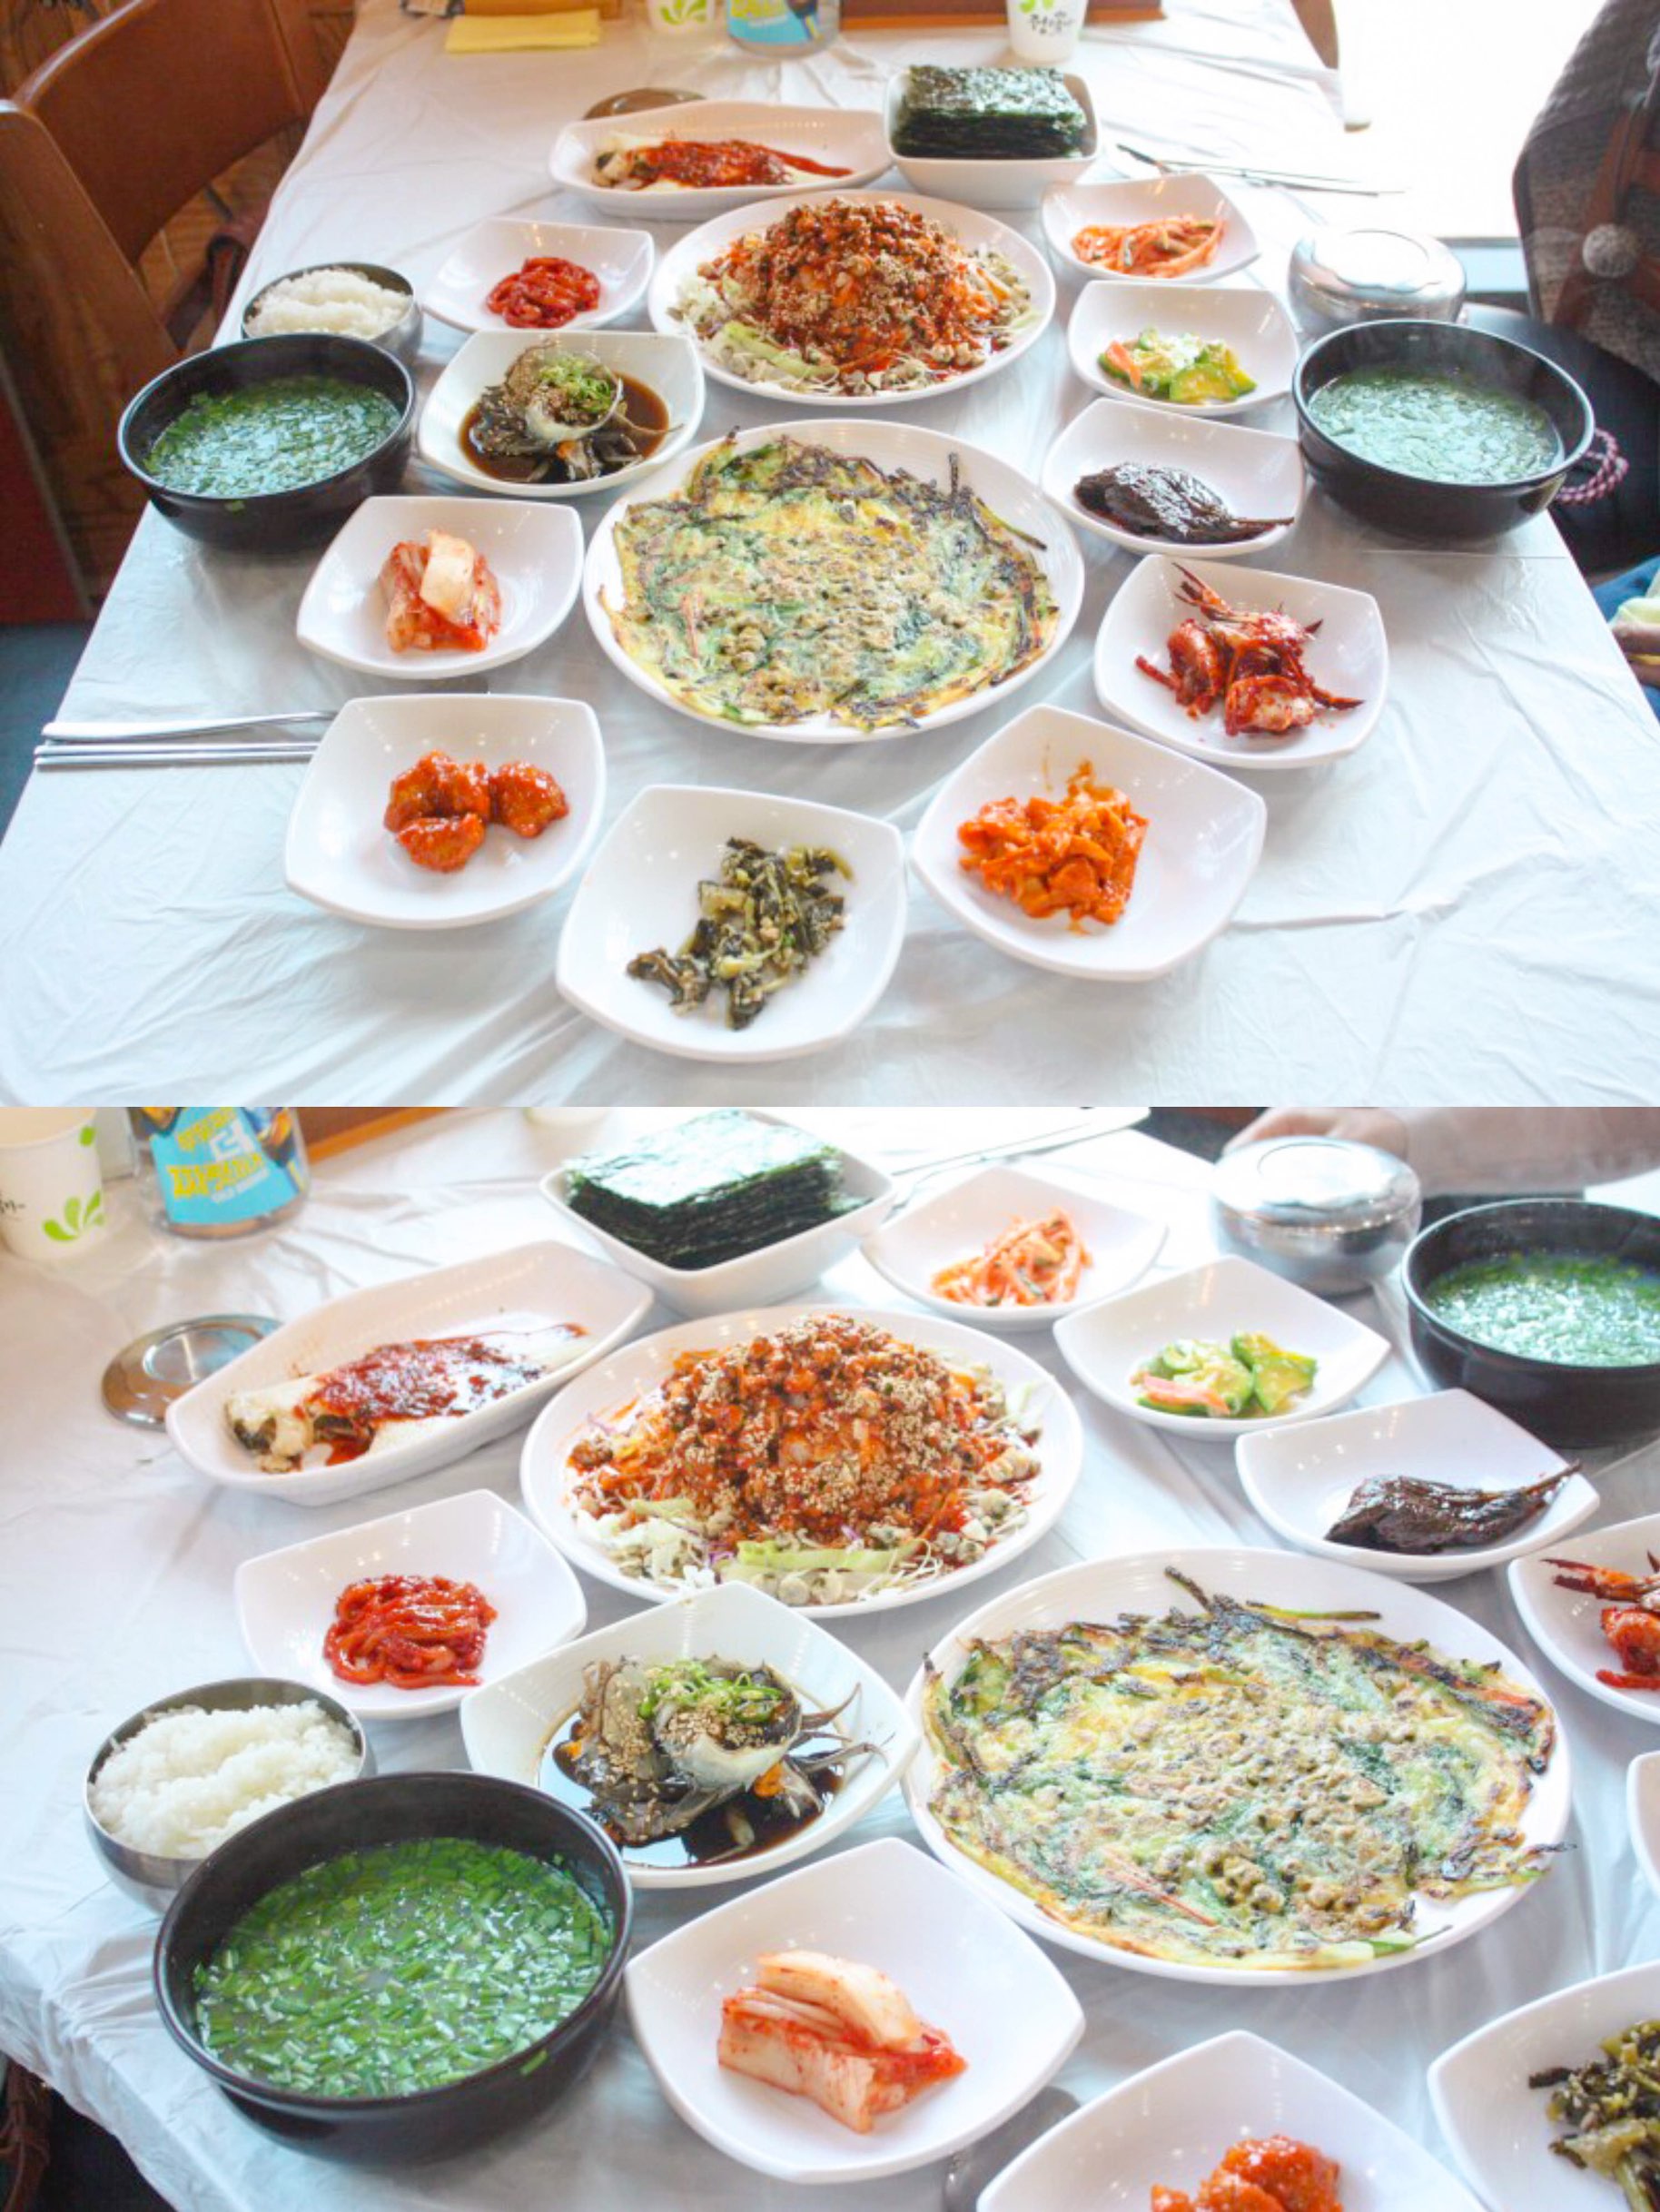 光阳梅花村附近的Jaecheop餐厅“Seomjin Gang Ttukbae Gijaecheop Restaurant”